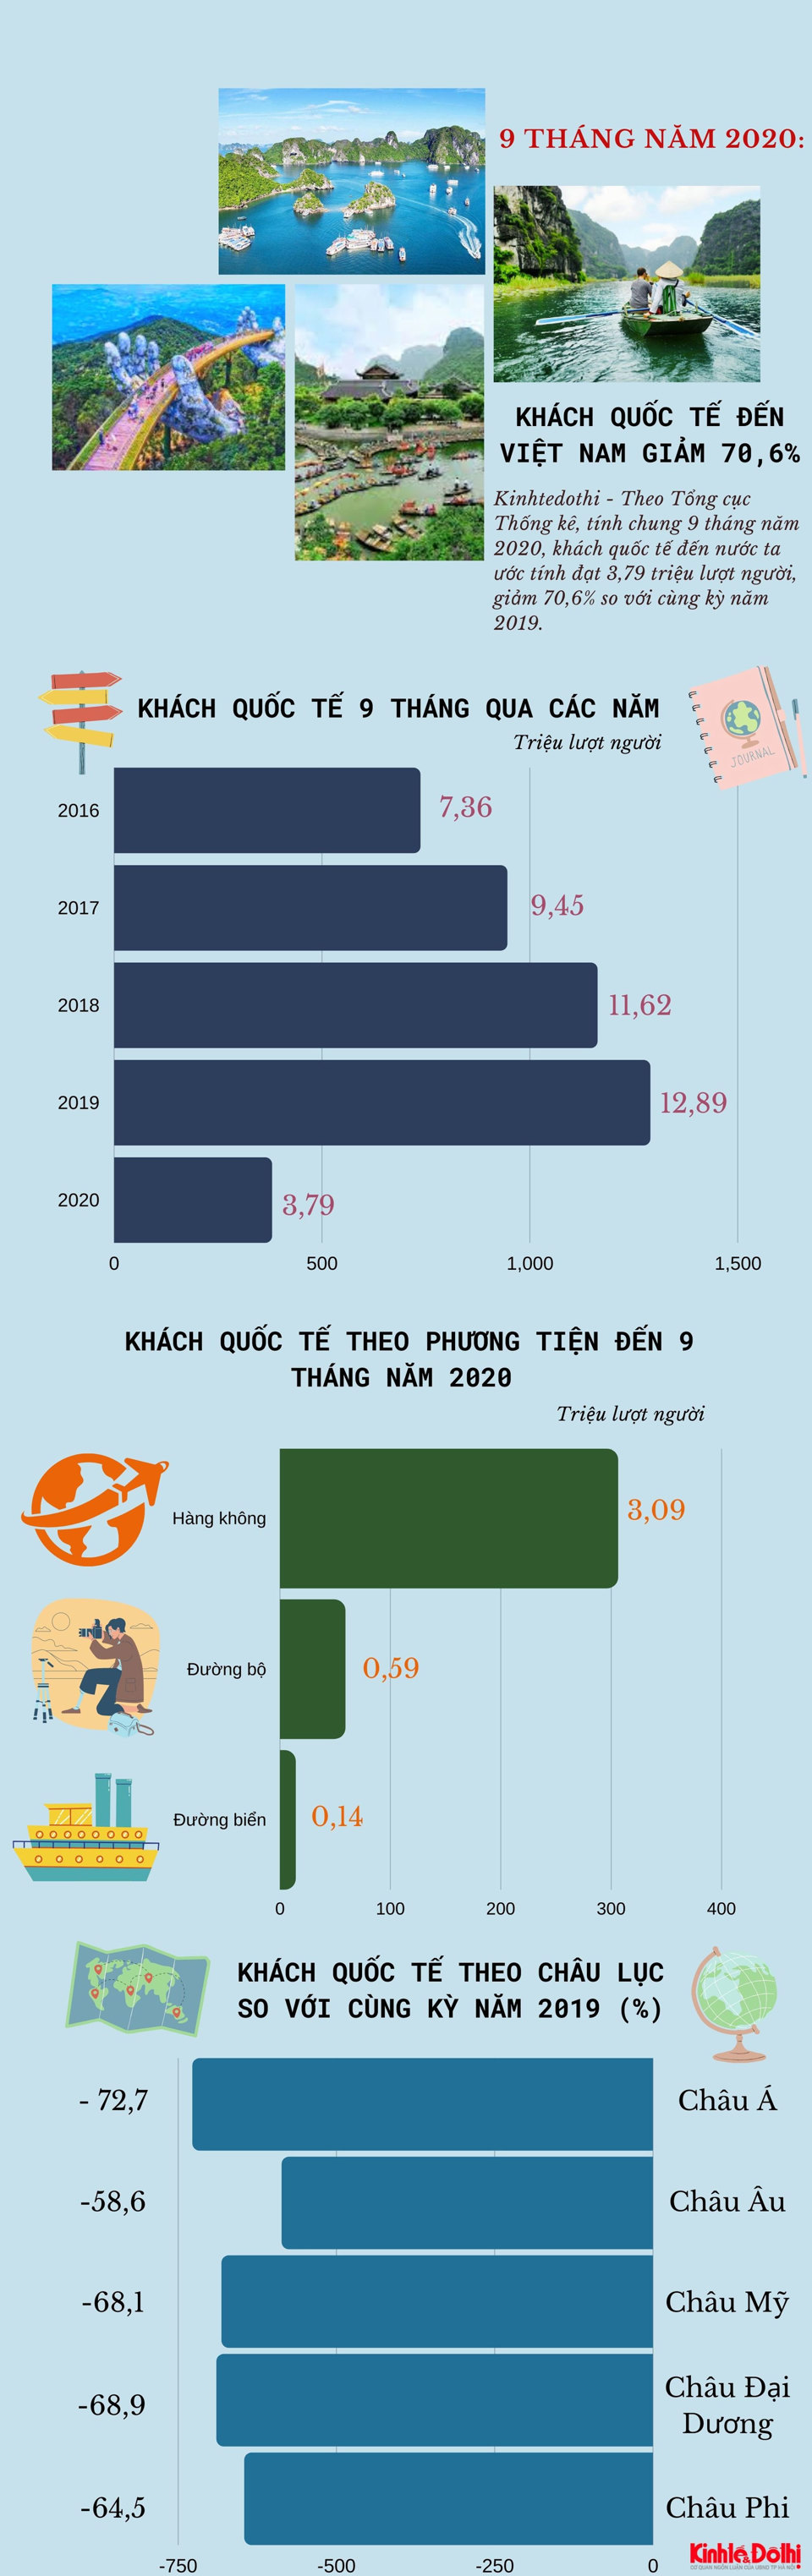 [Infographic] Khách quốc tế đến Việt Nam giảm 70,6% - Ảnh 1